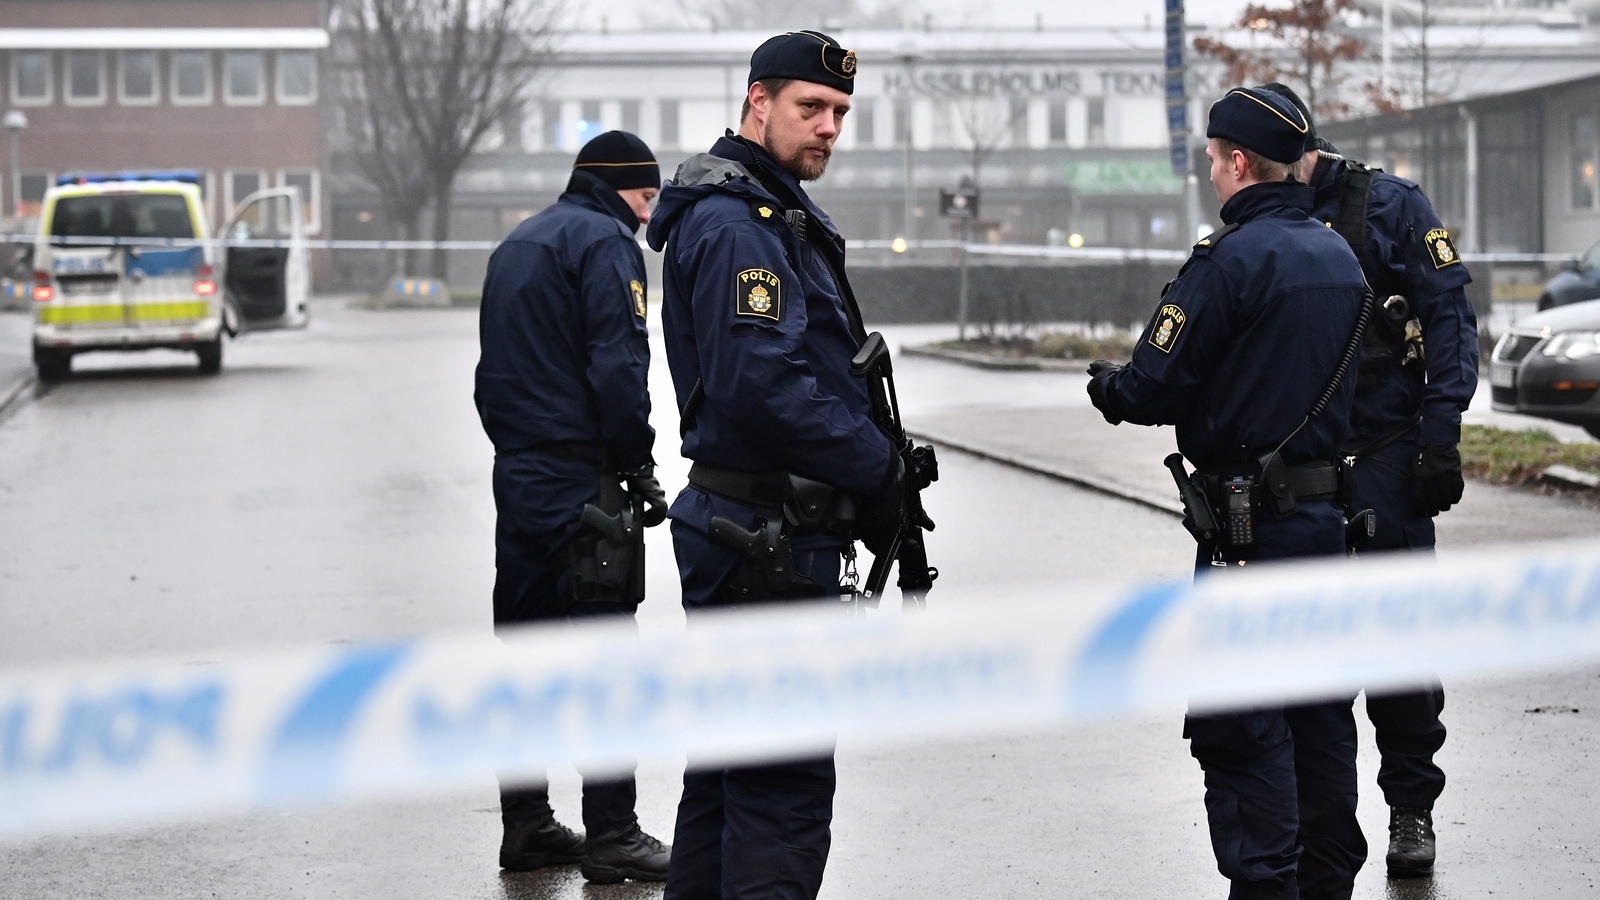 Polis på plats efter en explosion på Hässleholms Tekniska skola. 
Foto: Johan Nilsson / TT